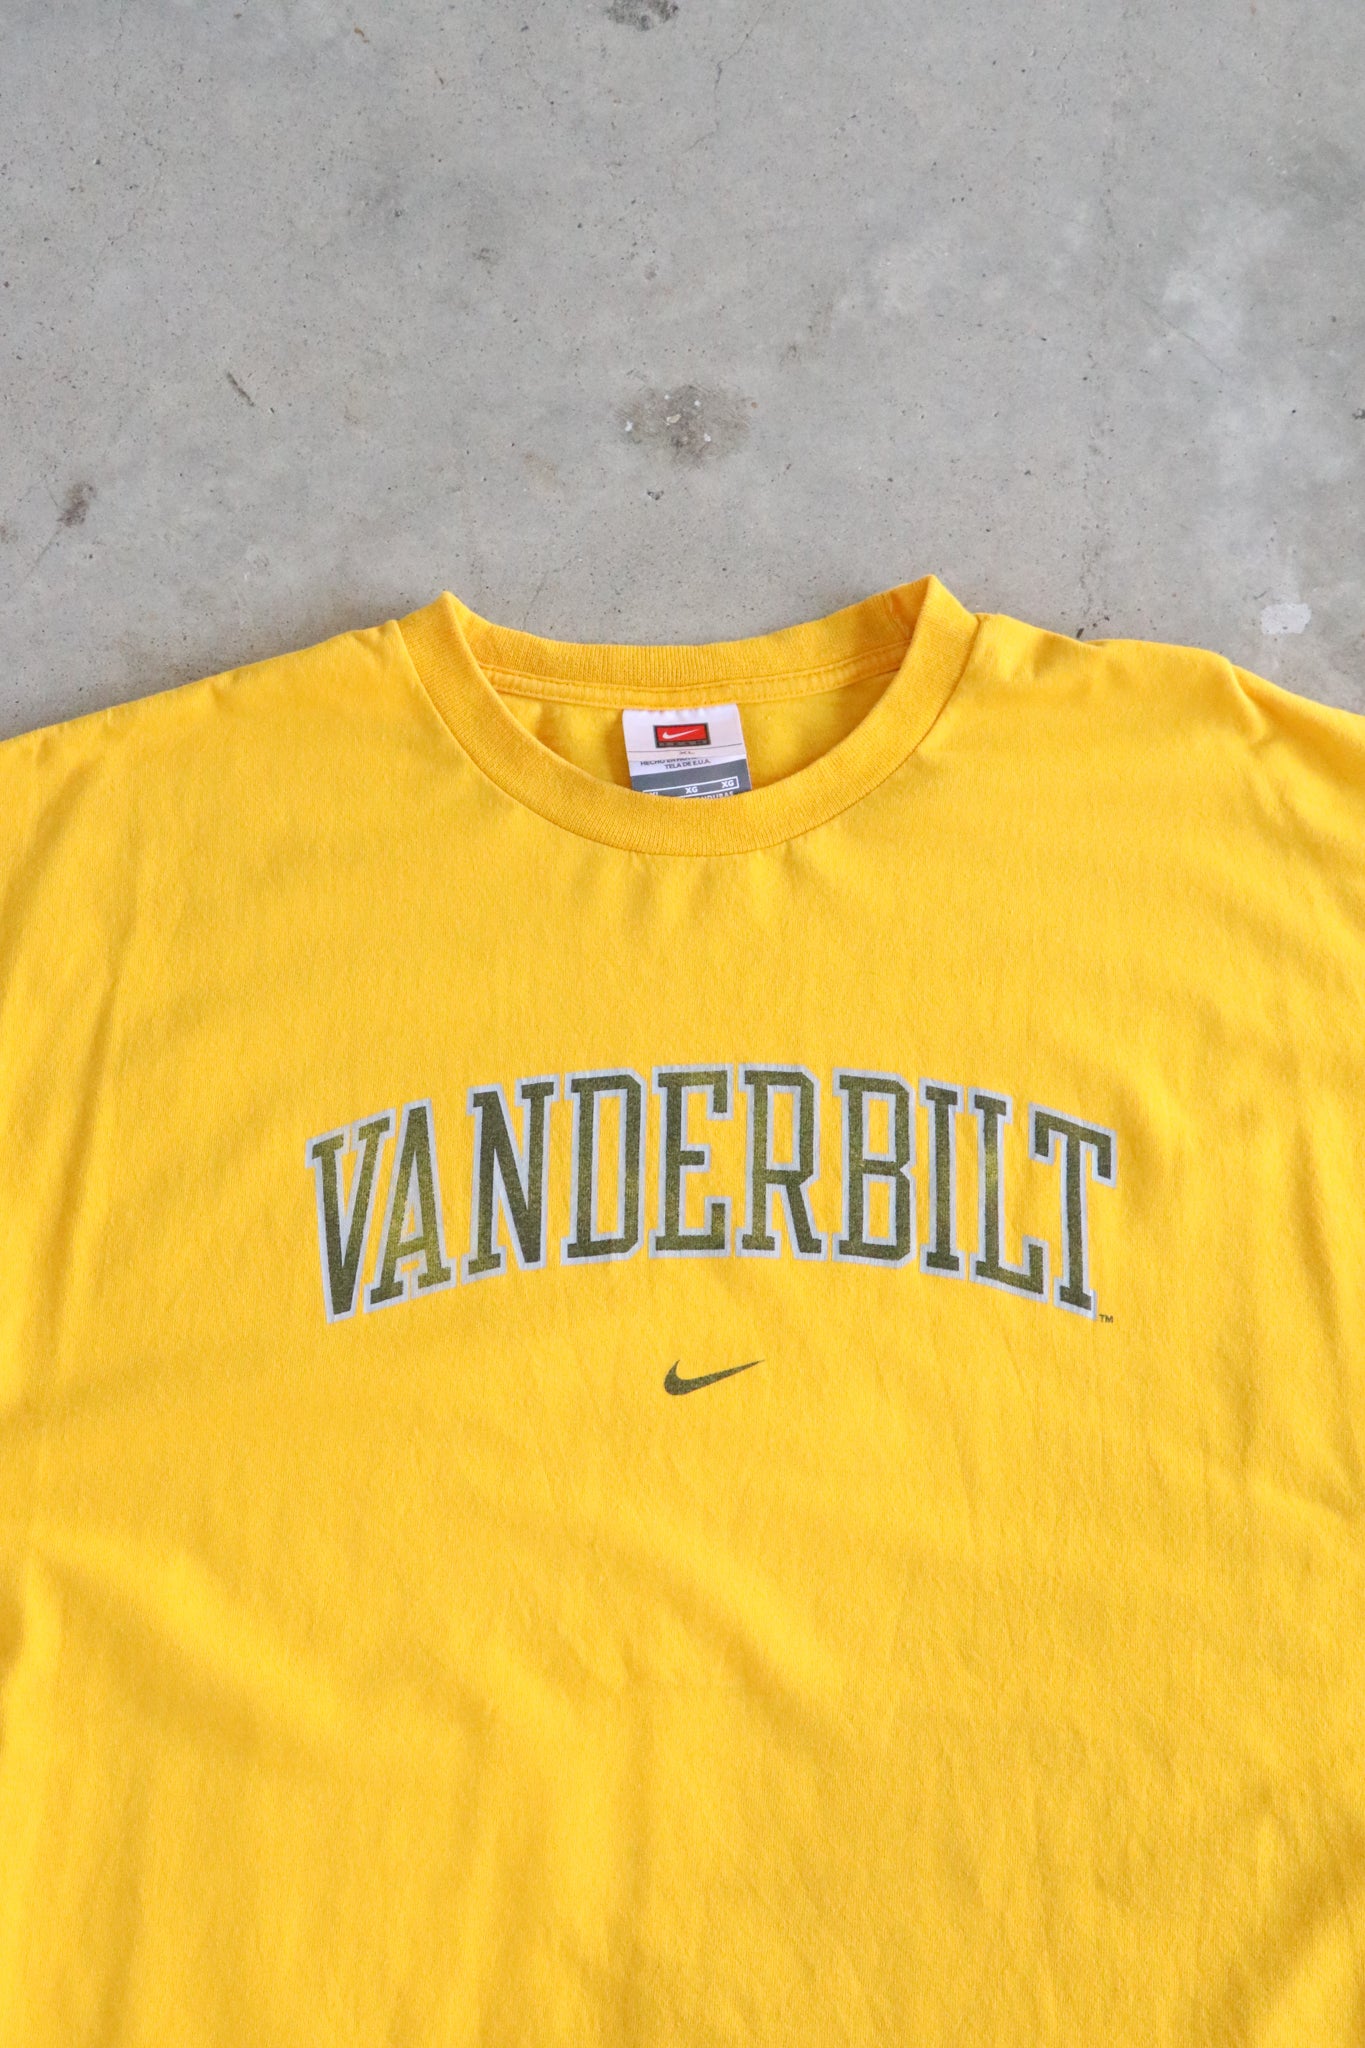 Vintage Nike Vanderbilt Tee XL